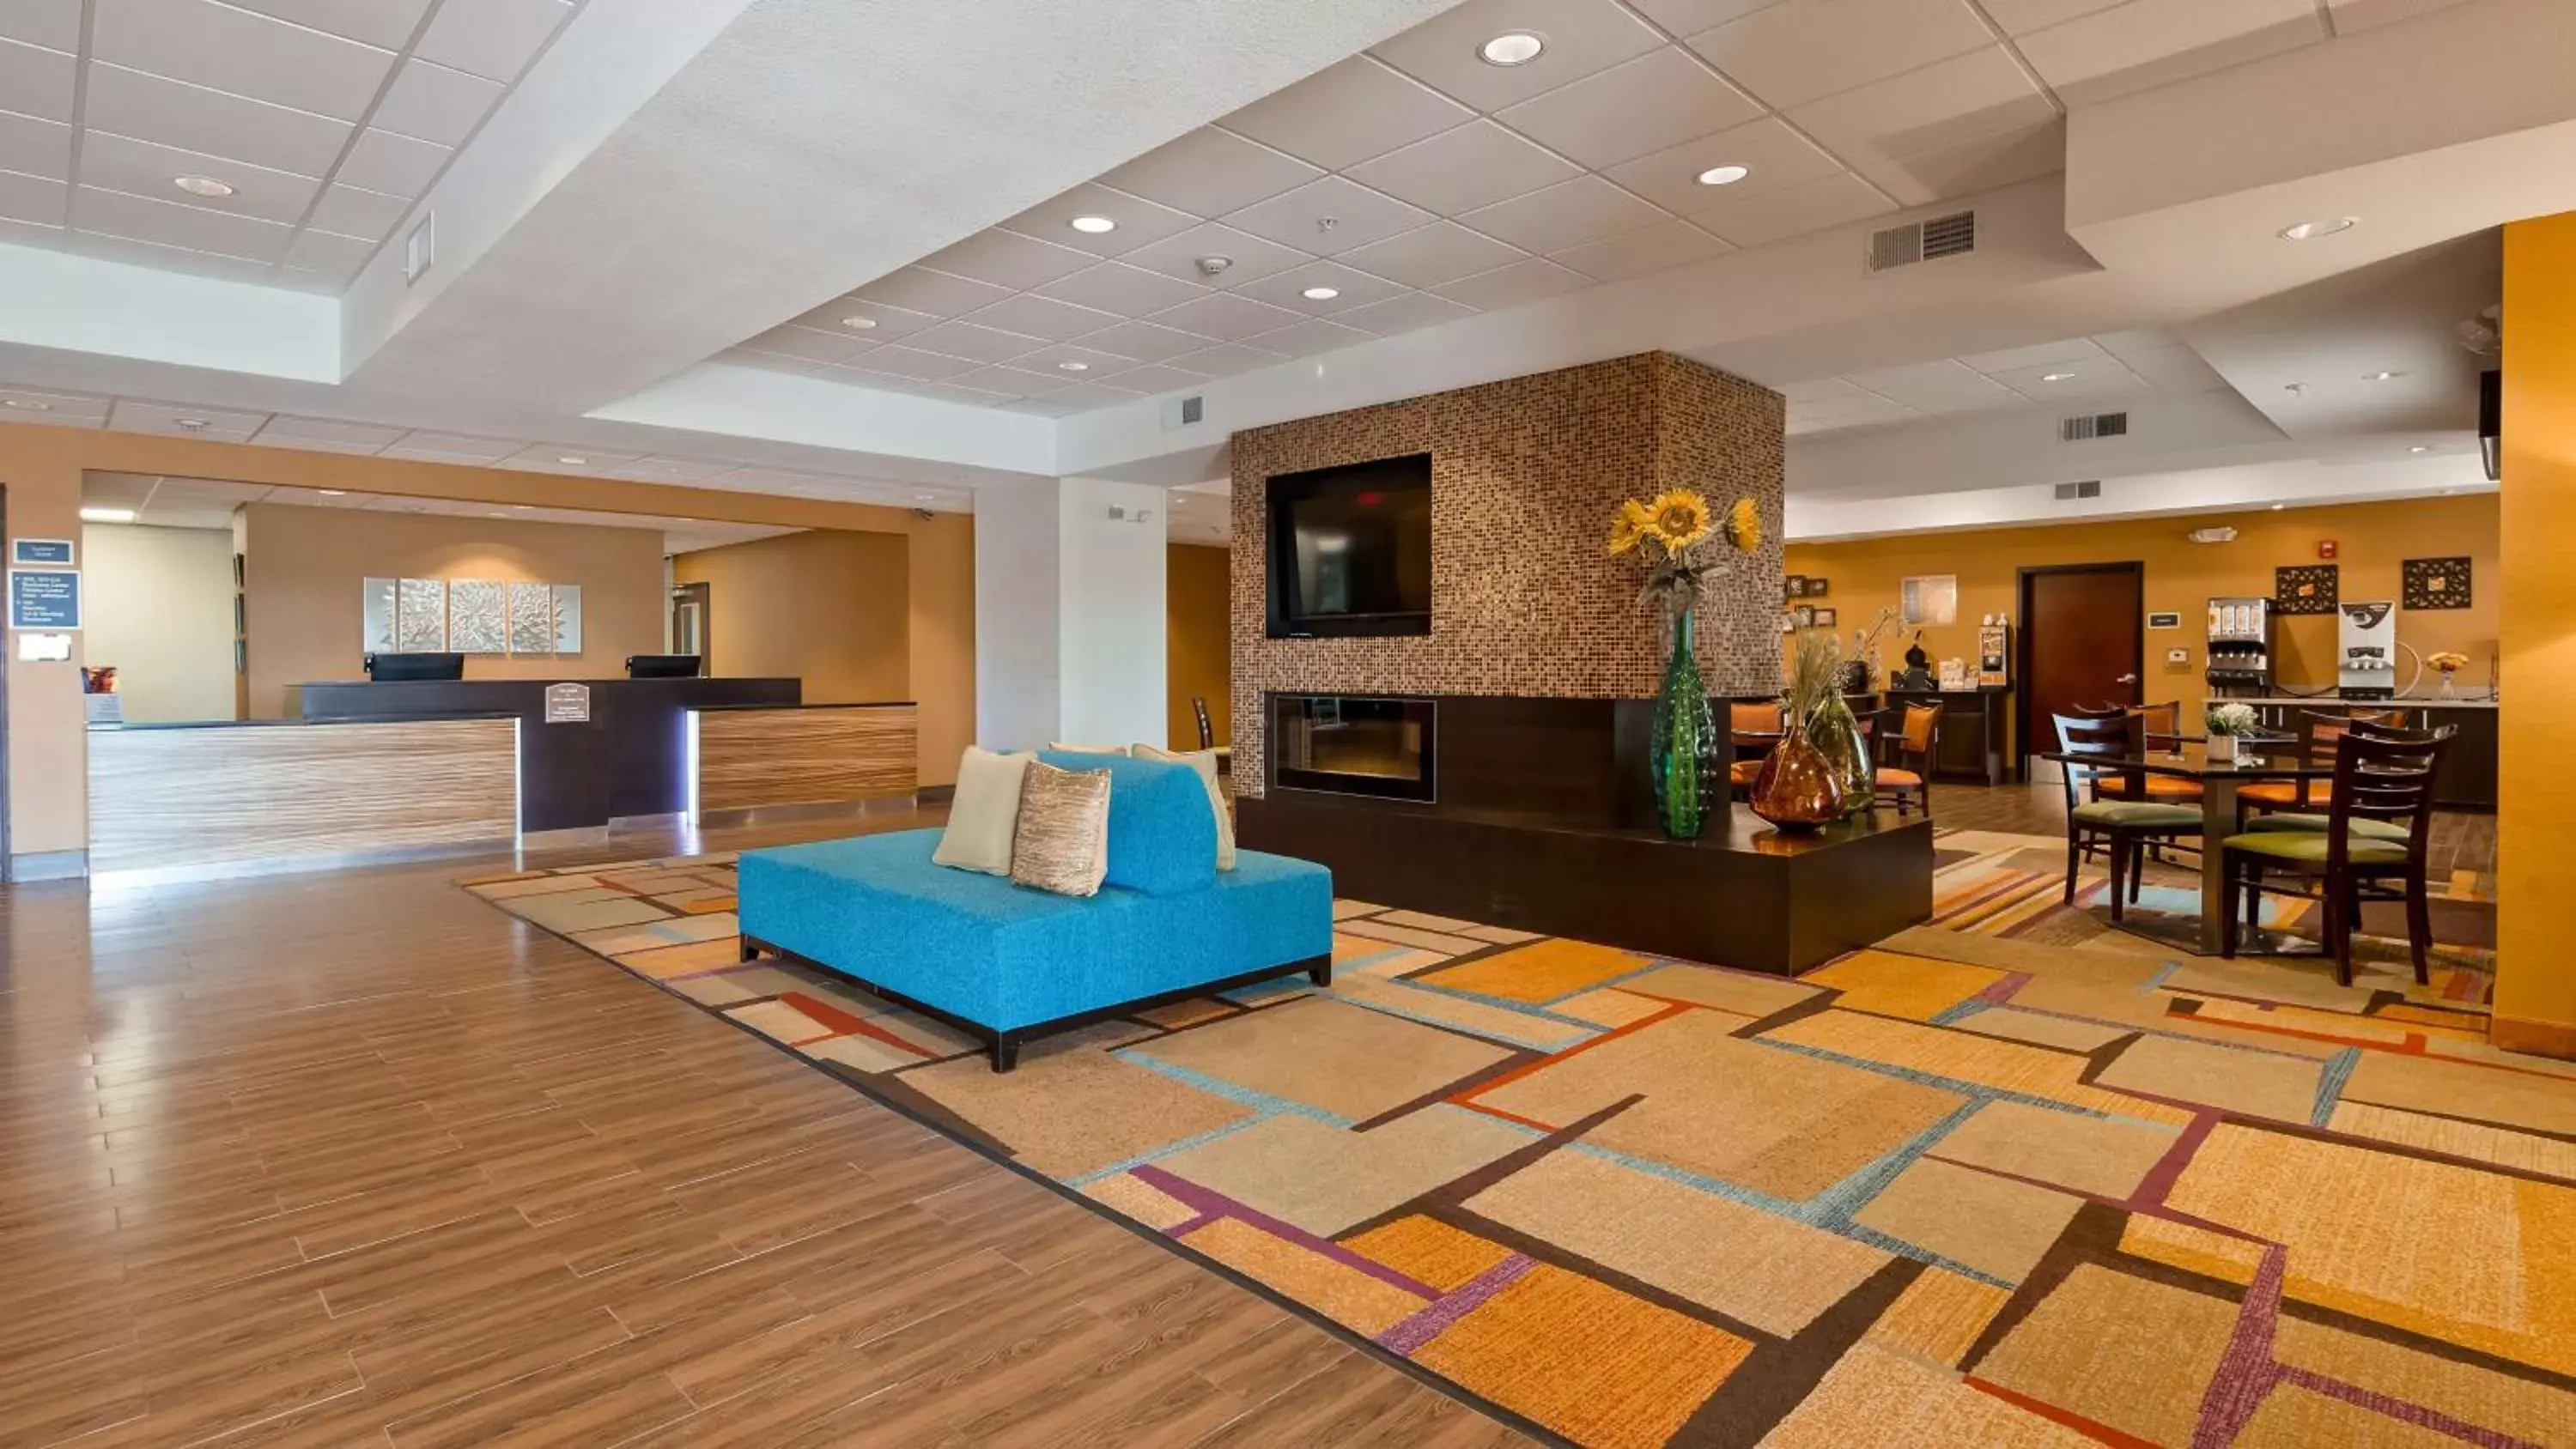 Lobby or reception, Lobby/Reception in Best Western Plus Hiawatha Hotel